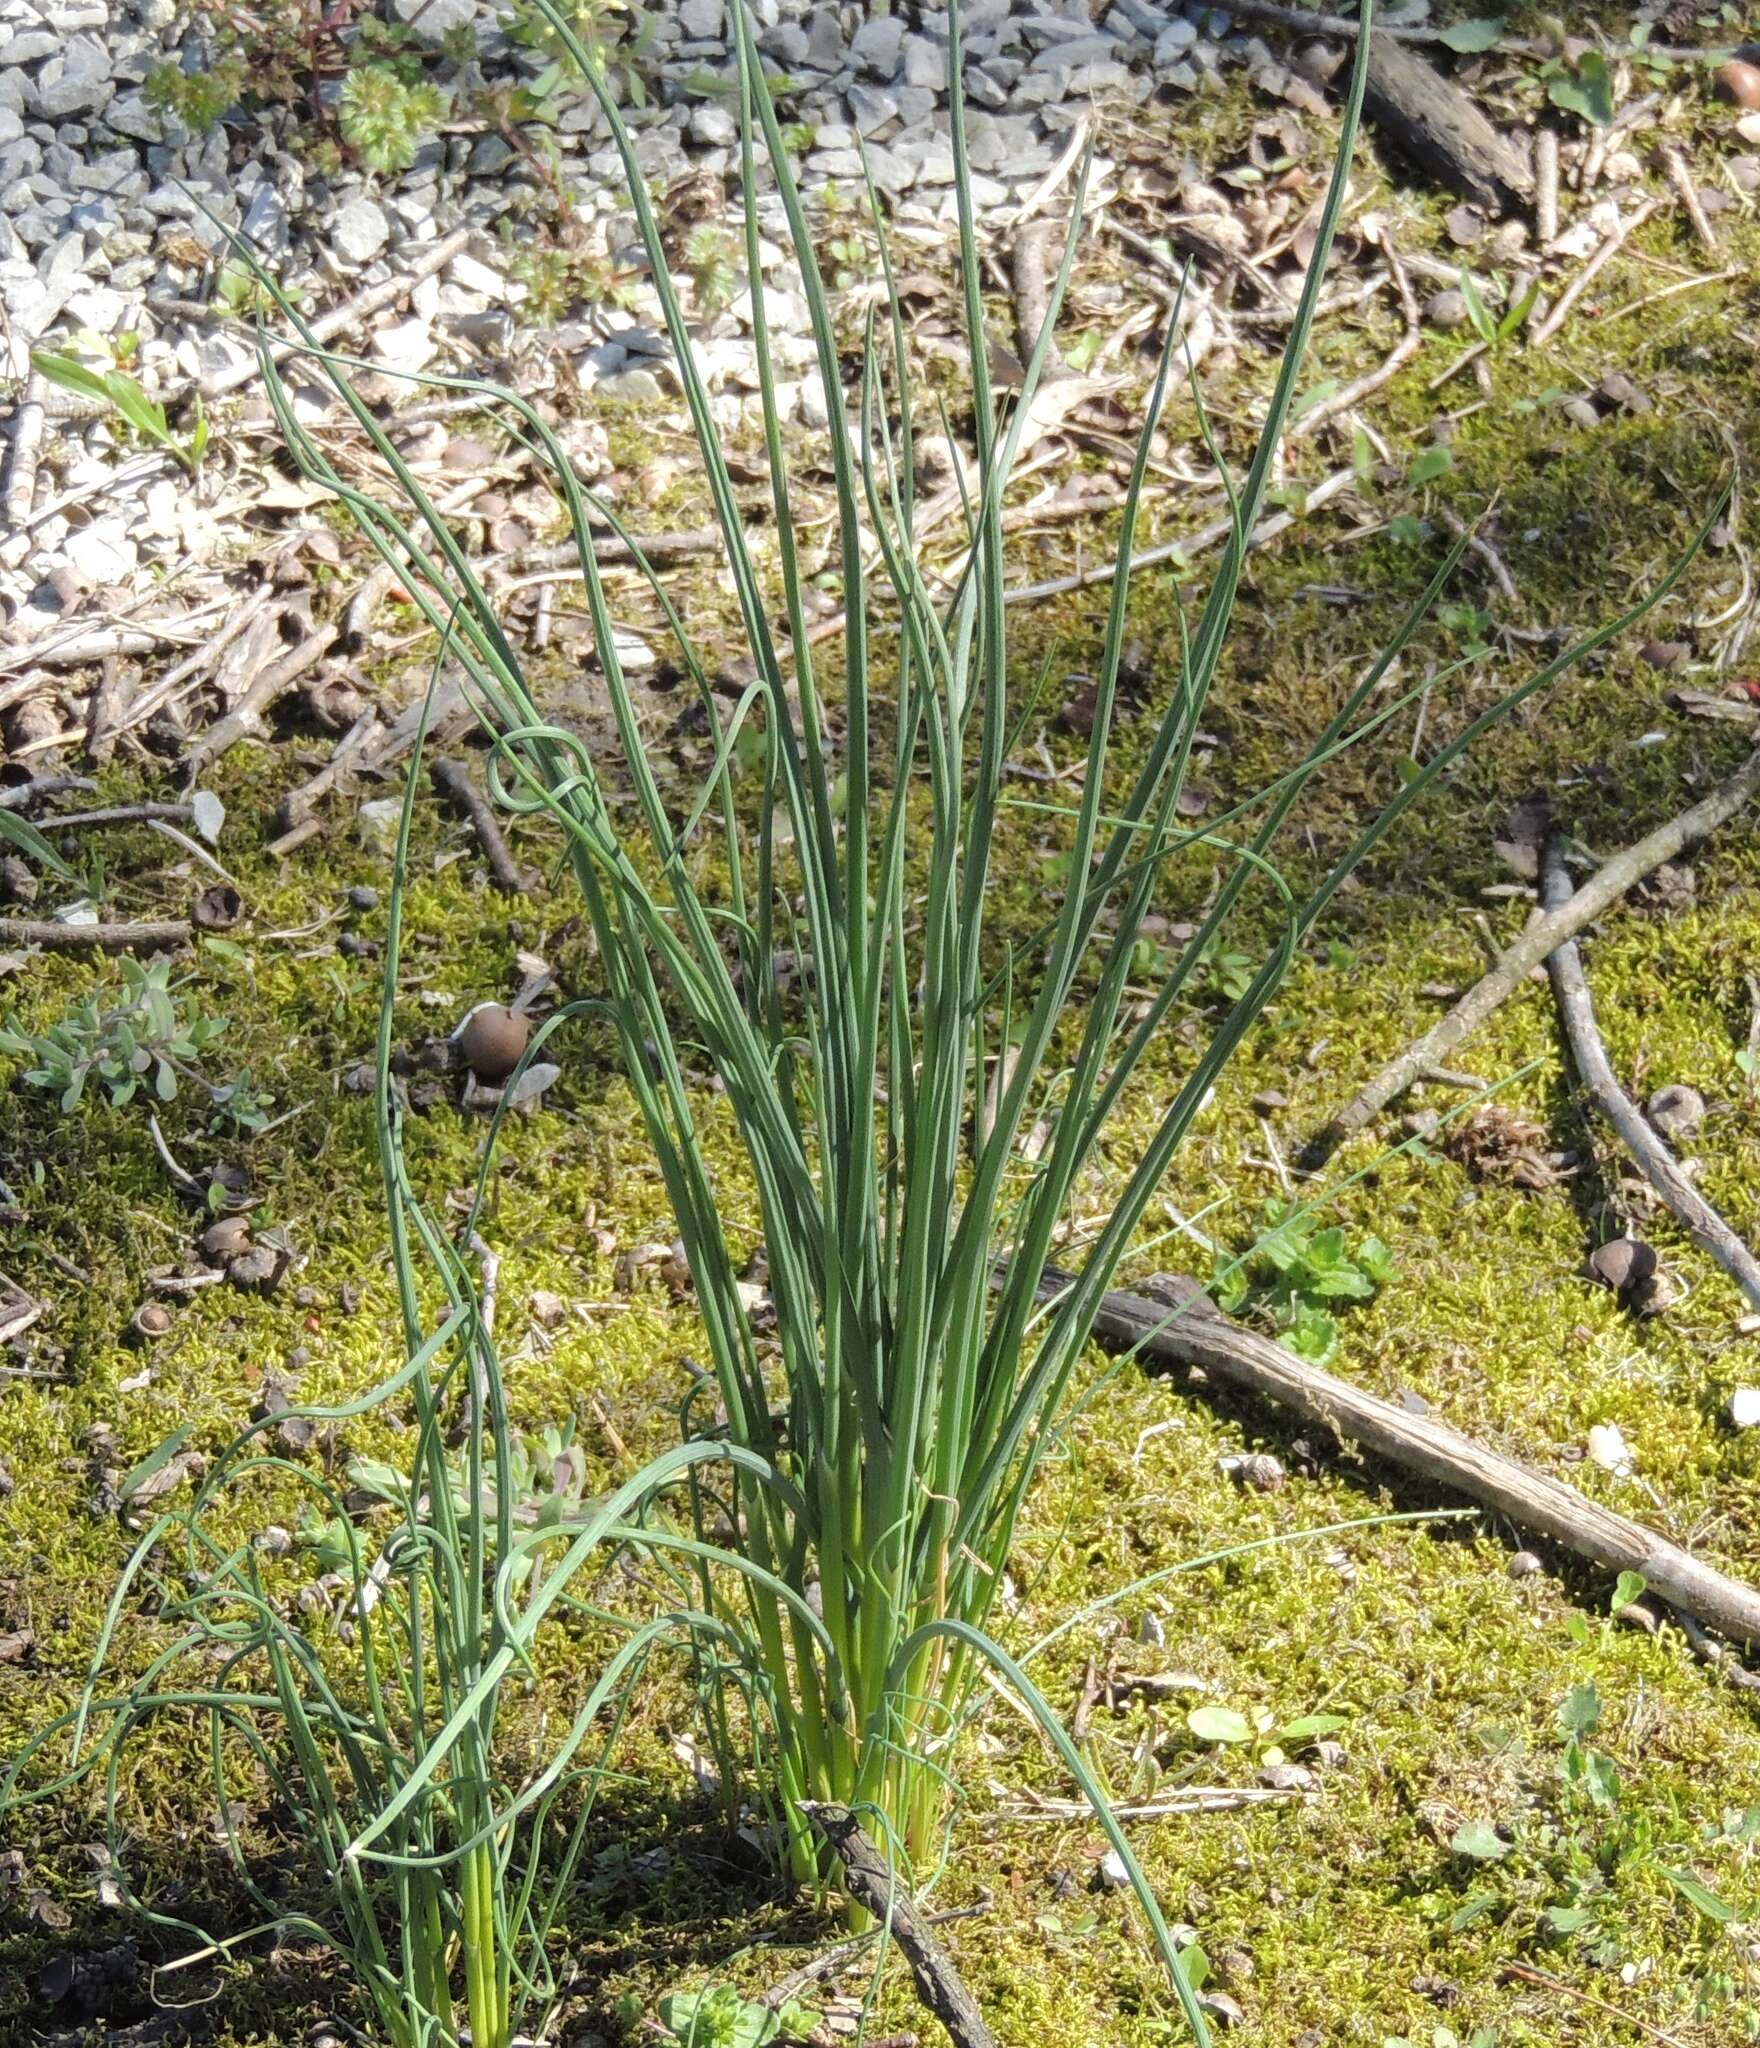 Image of <i>Allium <i>schoenoprasum</i></i> subsp. schoenoprasum